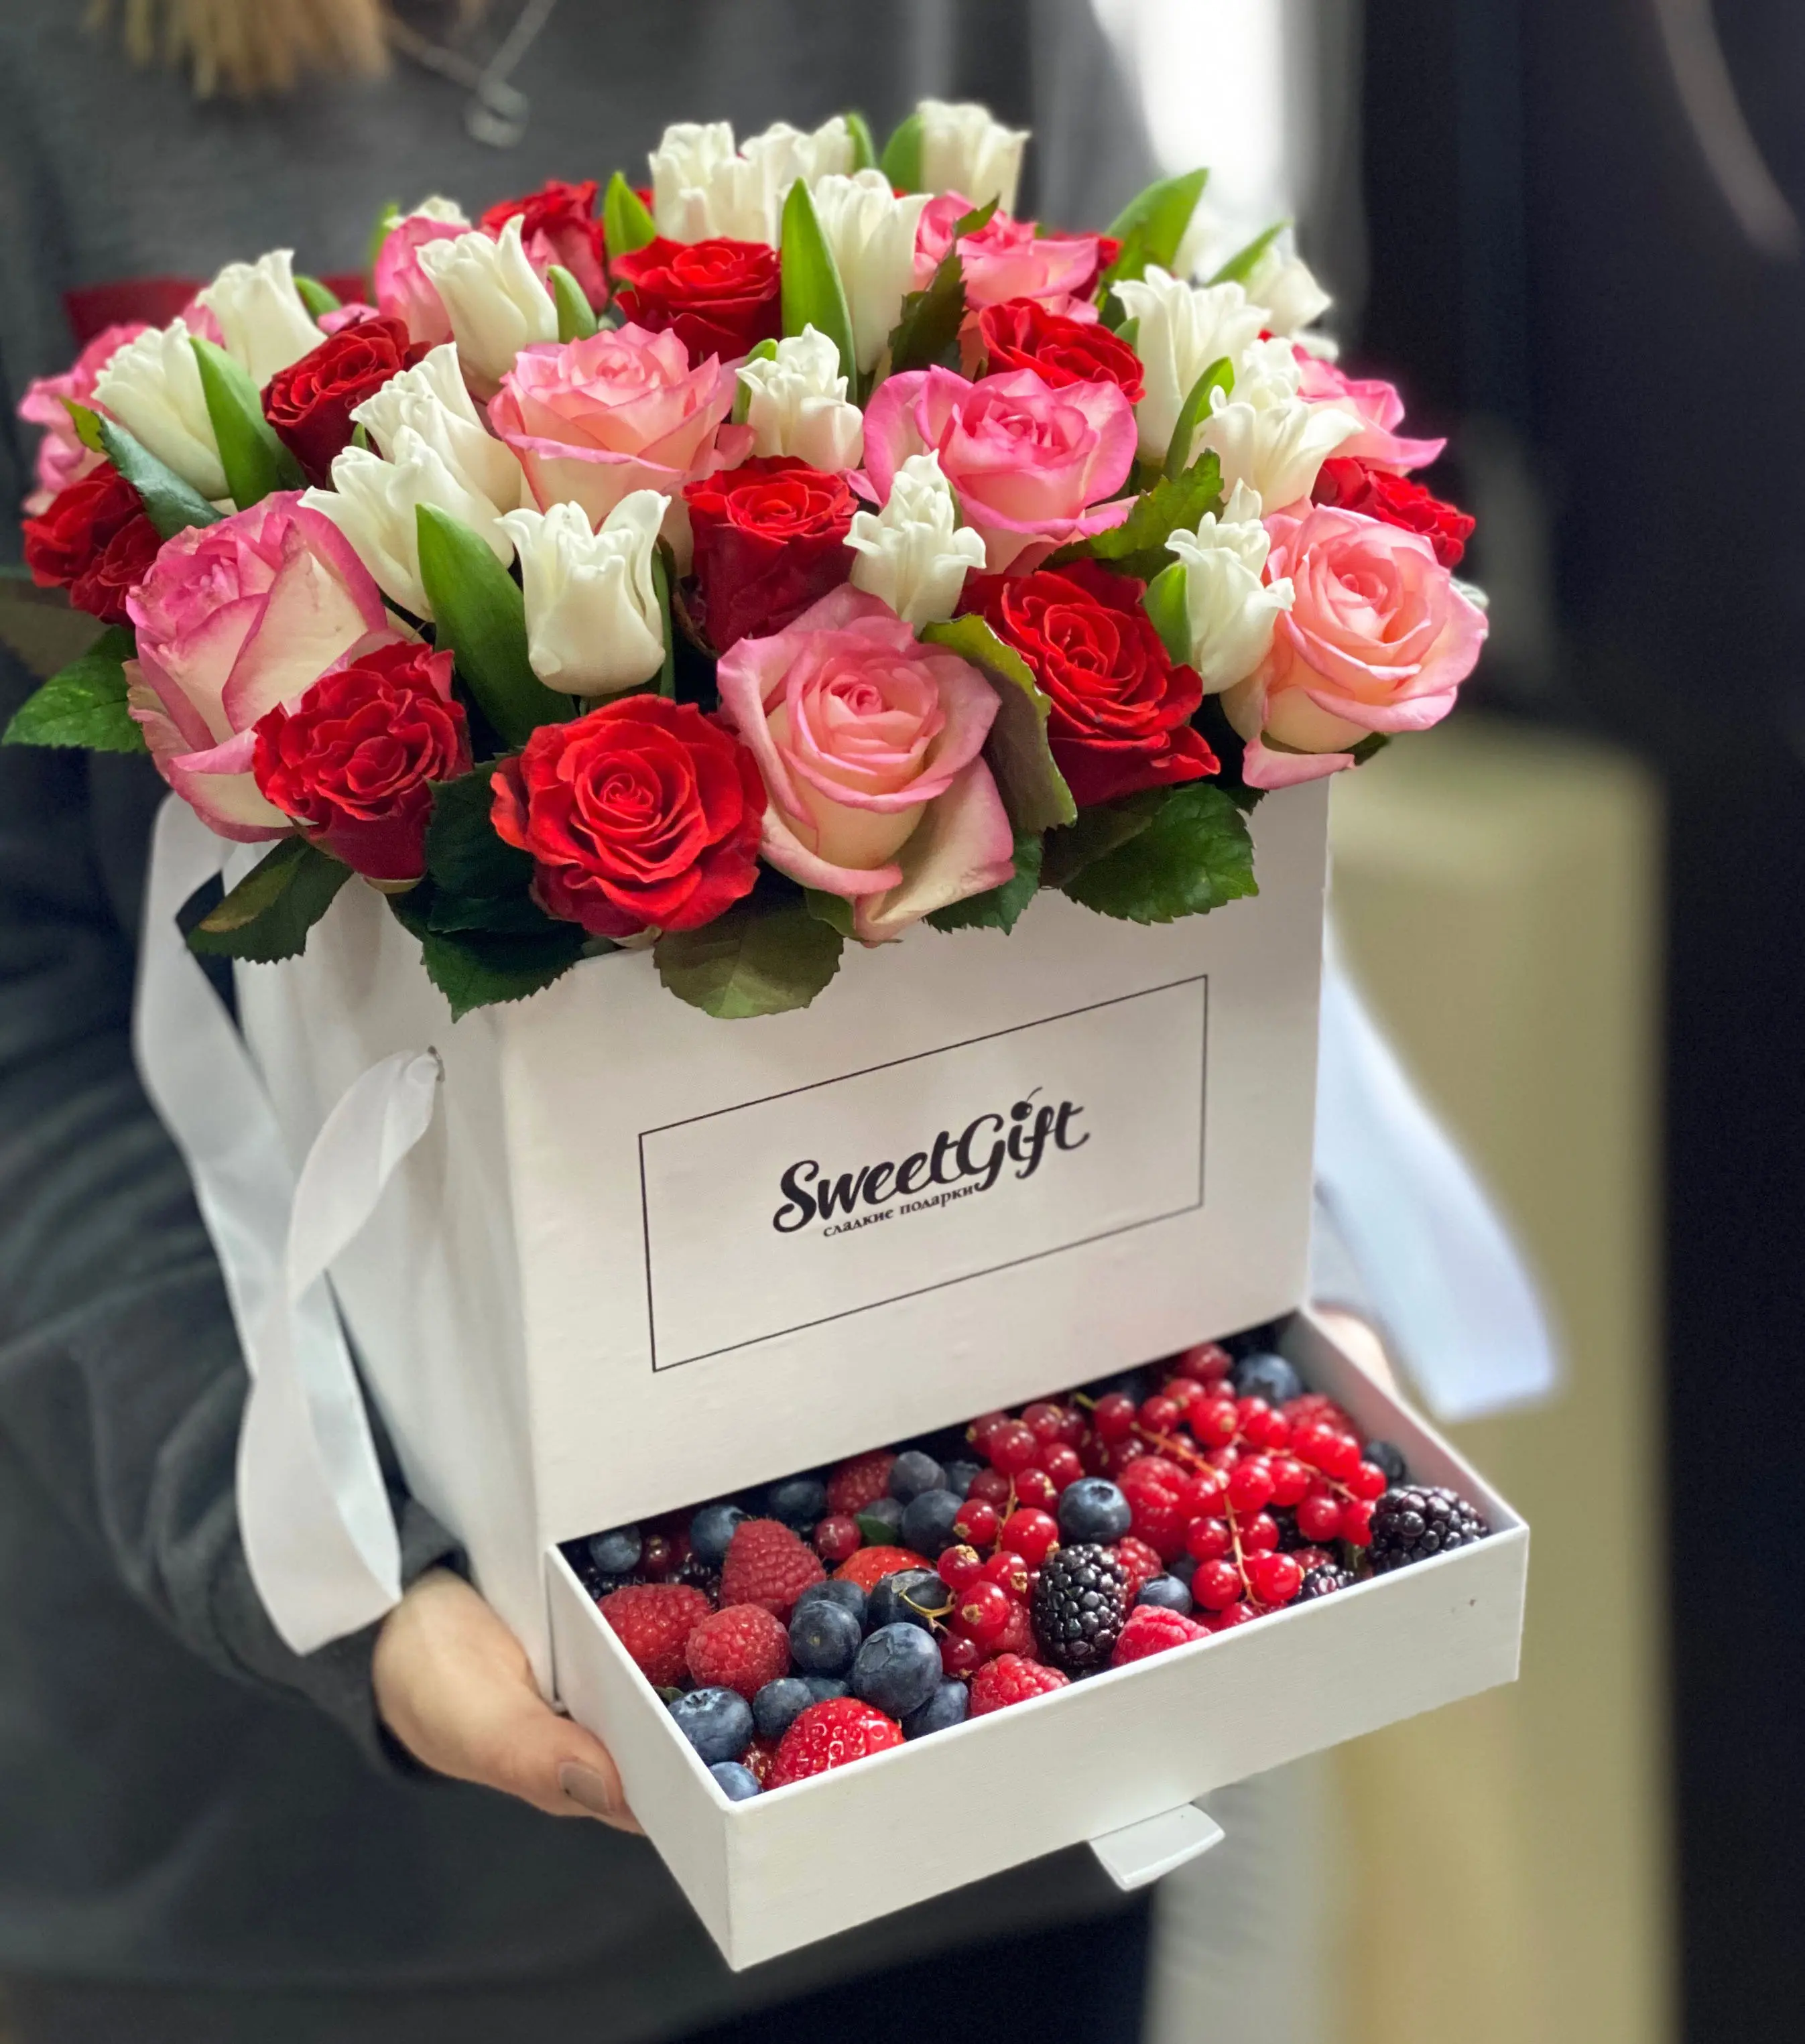 Букет шкатулка из ягод и цветов "Сочный сюрприз" 10 900 руб.